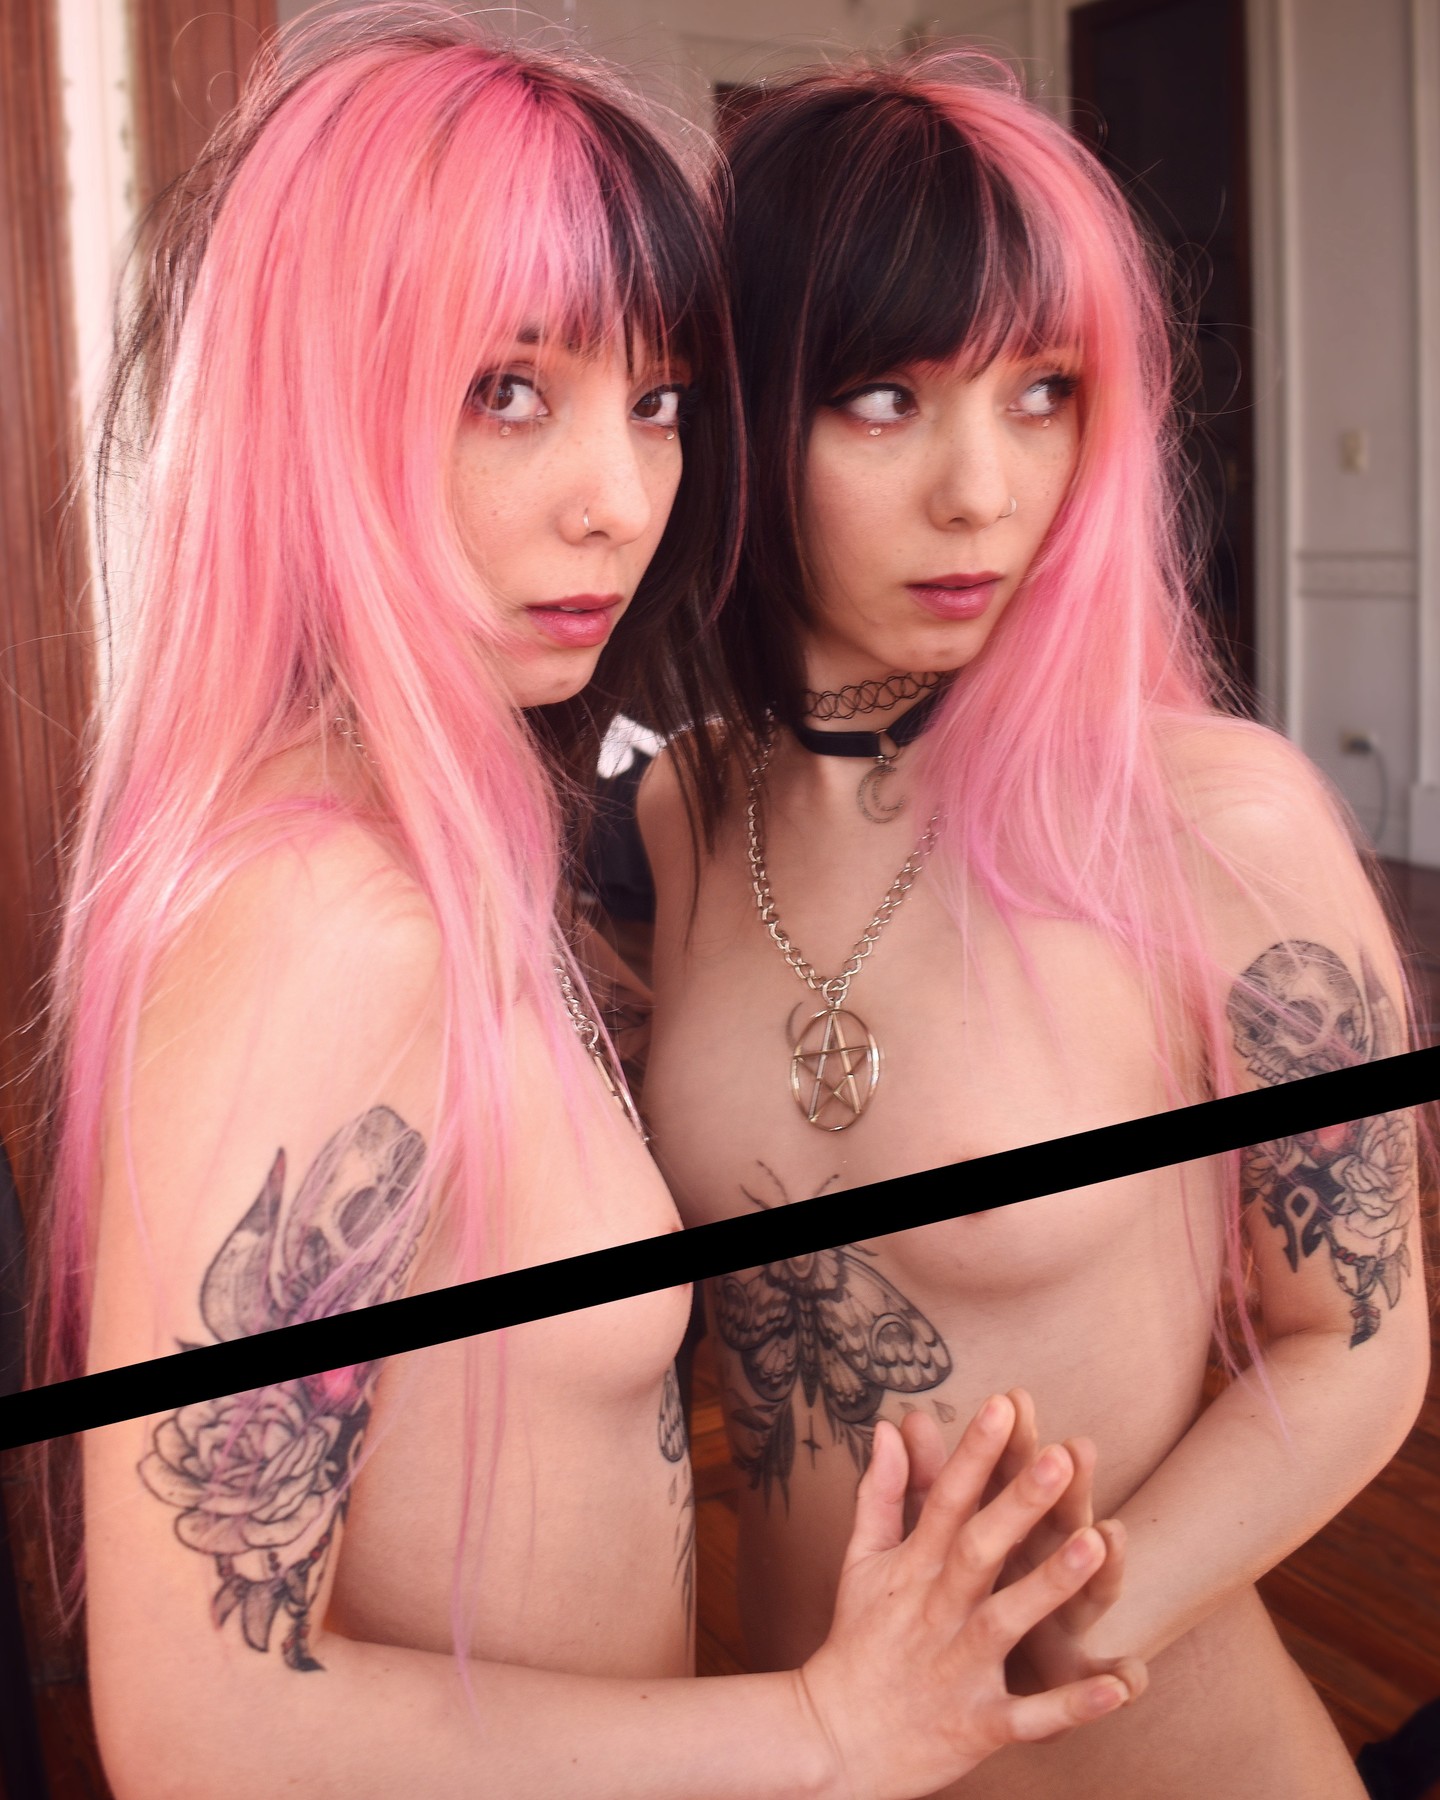 A través del espejo💫
Buenos Aires.

Próximamente en Sg...

Fotografía @maxipachi07_ 
Edición @_natu_art_ 

Resubida con más calidad y más placer.

#photooftheday #photography #art #model #alternative #aesthetic #pink #tattoo